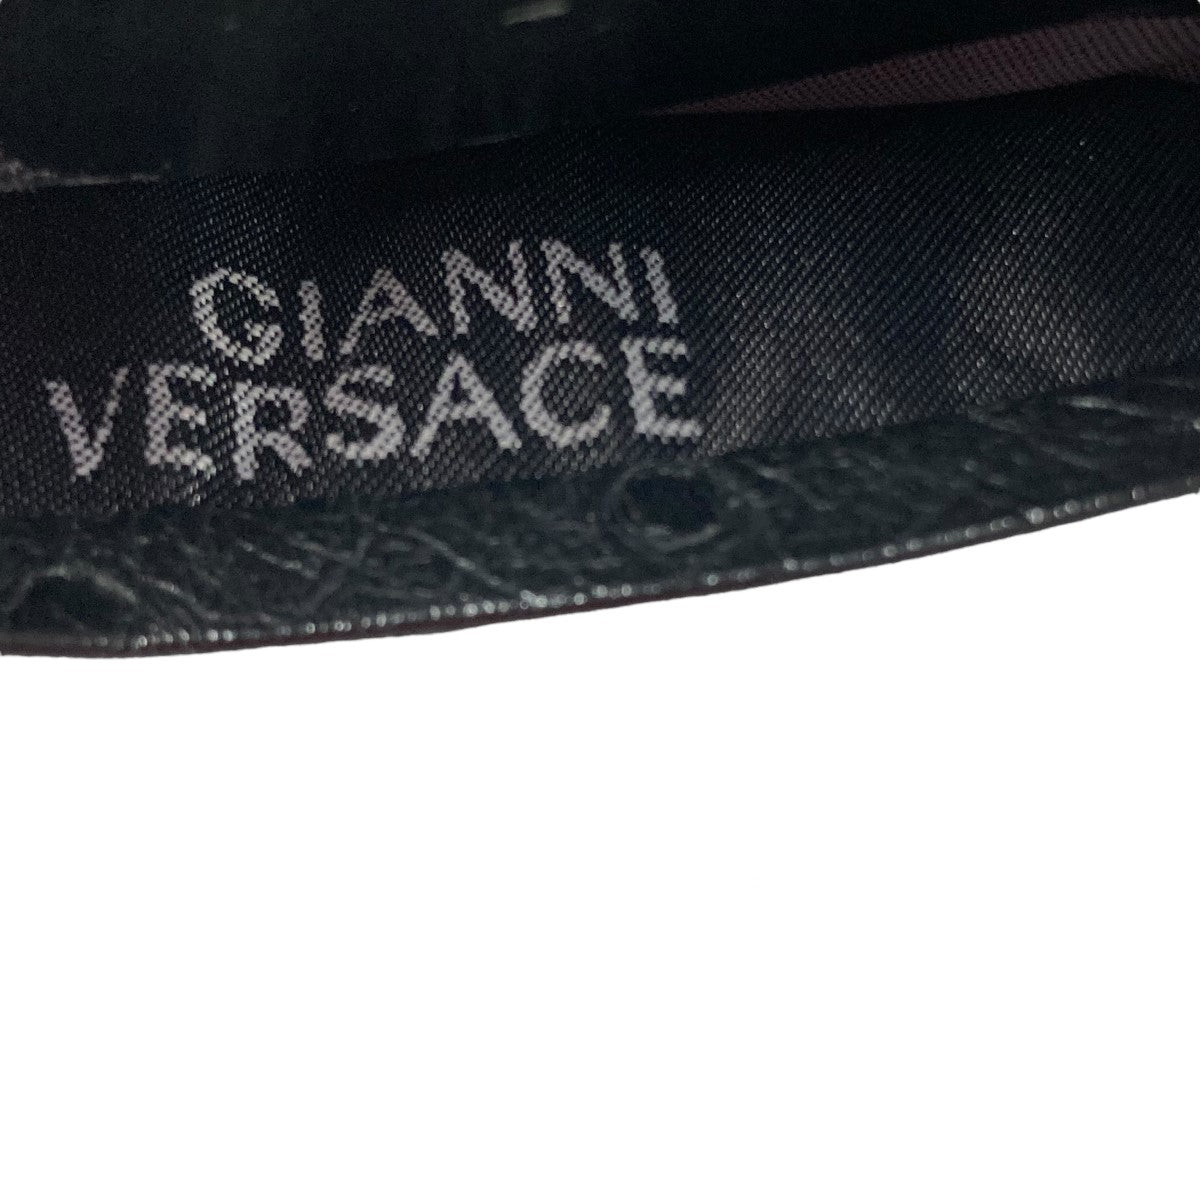 GIANNI VERSACE(ジャンニヴェルサーチ) カードケース ブラック サイズ 